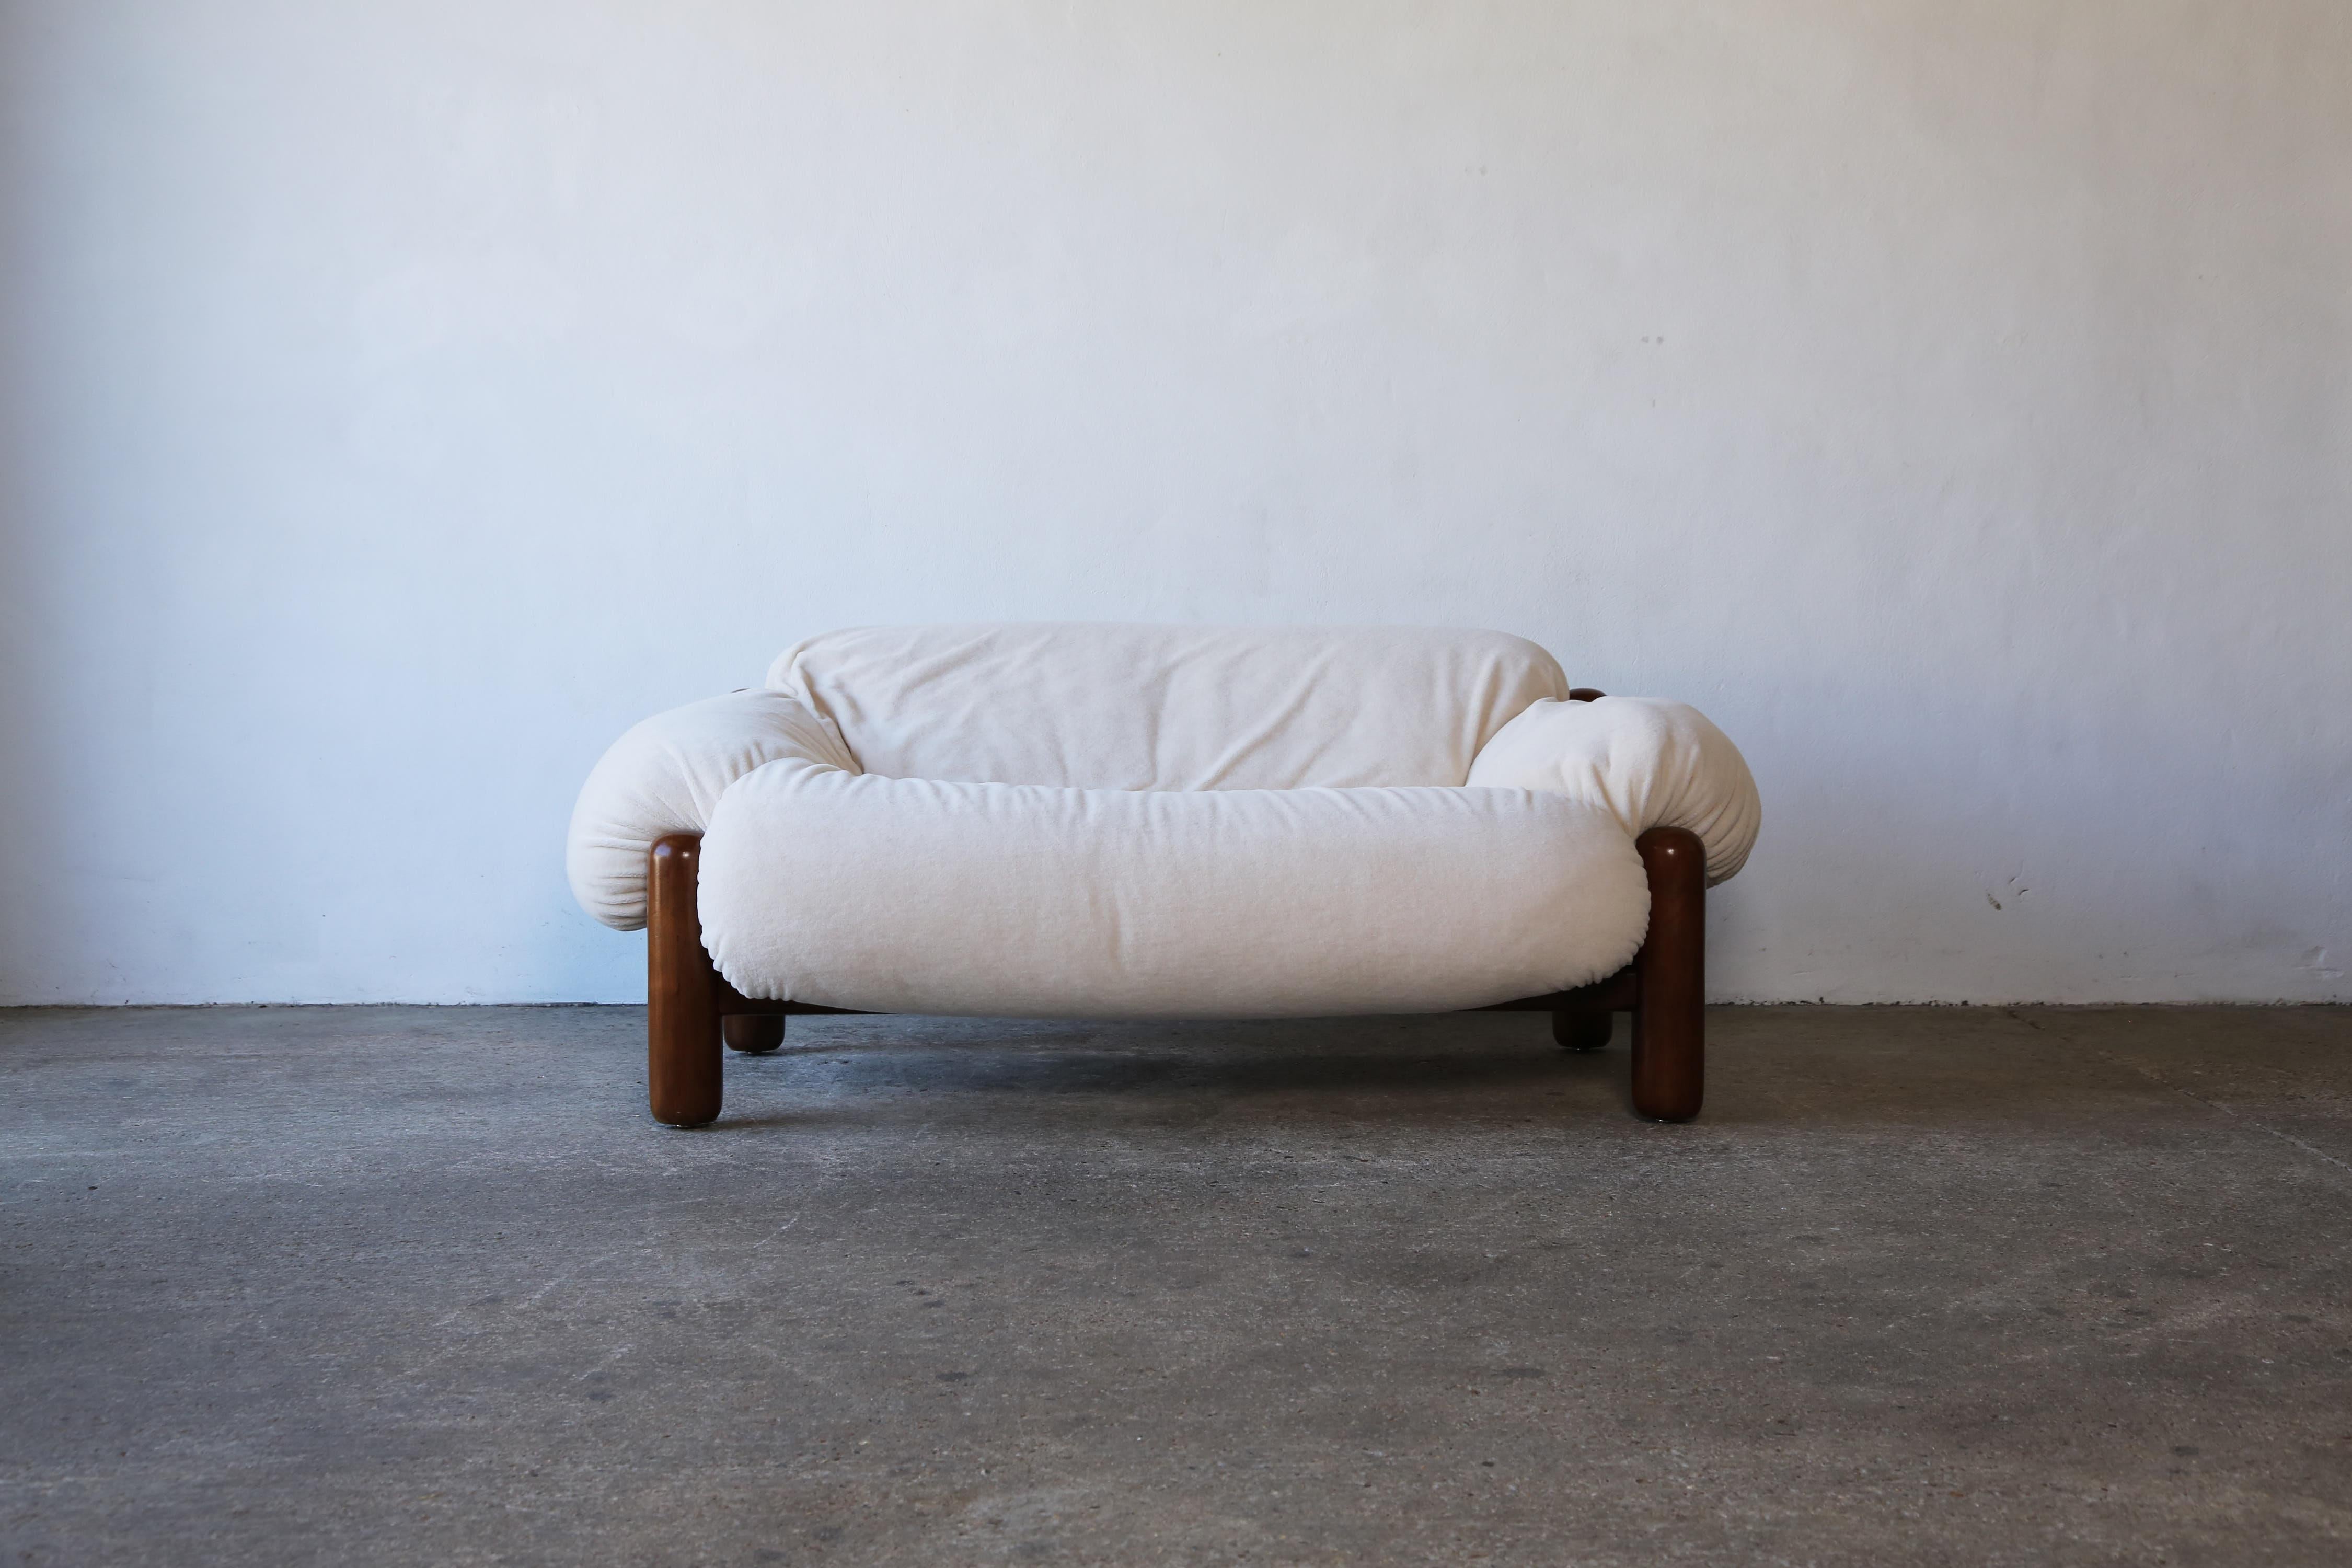 Ein großartiges und selten gesehenes Sofa. So bequem wie es aussieht. Das in Italien hergestellte Sofa ist eine Anspielung auf das brasilianische Design der Jahrhundertmitte. Der Holzrahmen ist im Originalzustand, strukturell gesund, mit einigen